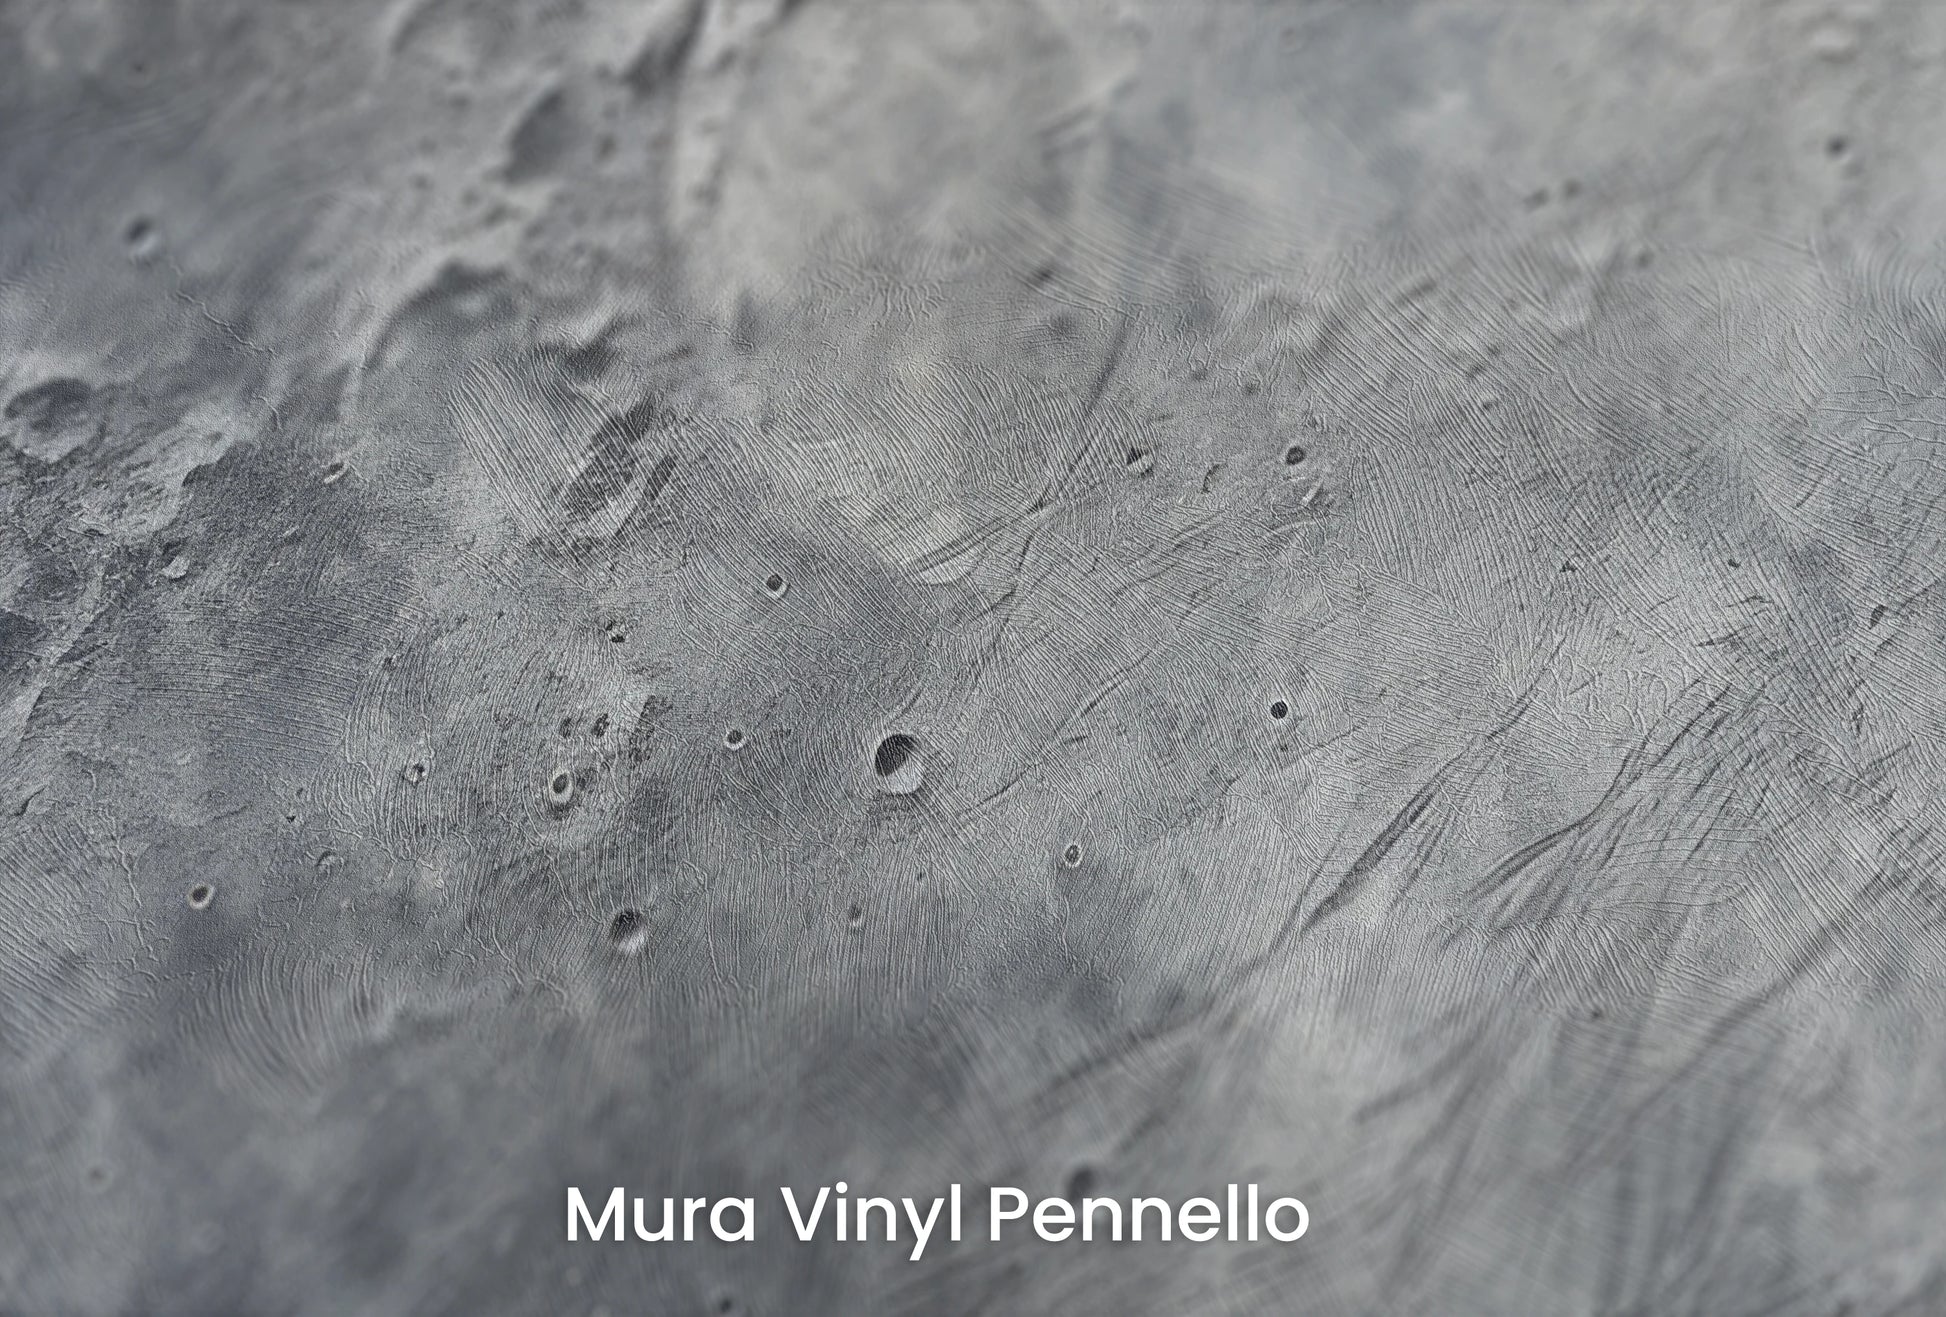 Zbliżenie na artystyczną fototapetę o nazwie Moonlight Sonata na podłożu Mura Vinyl Pennello - faktura pociągnięć pędzla malarskiego.